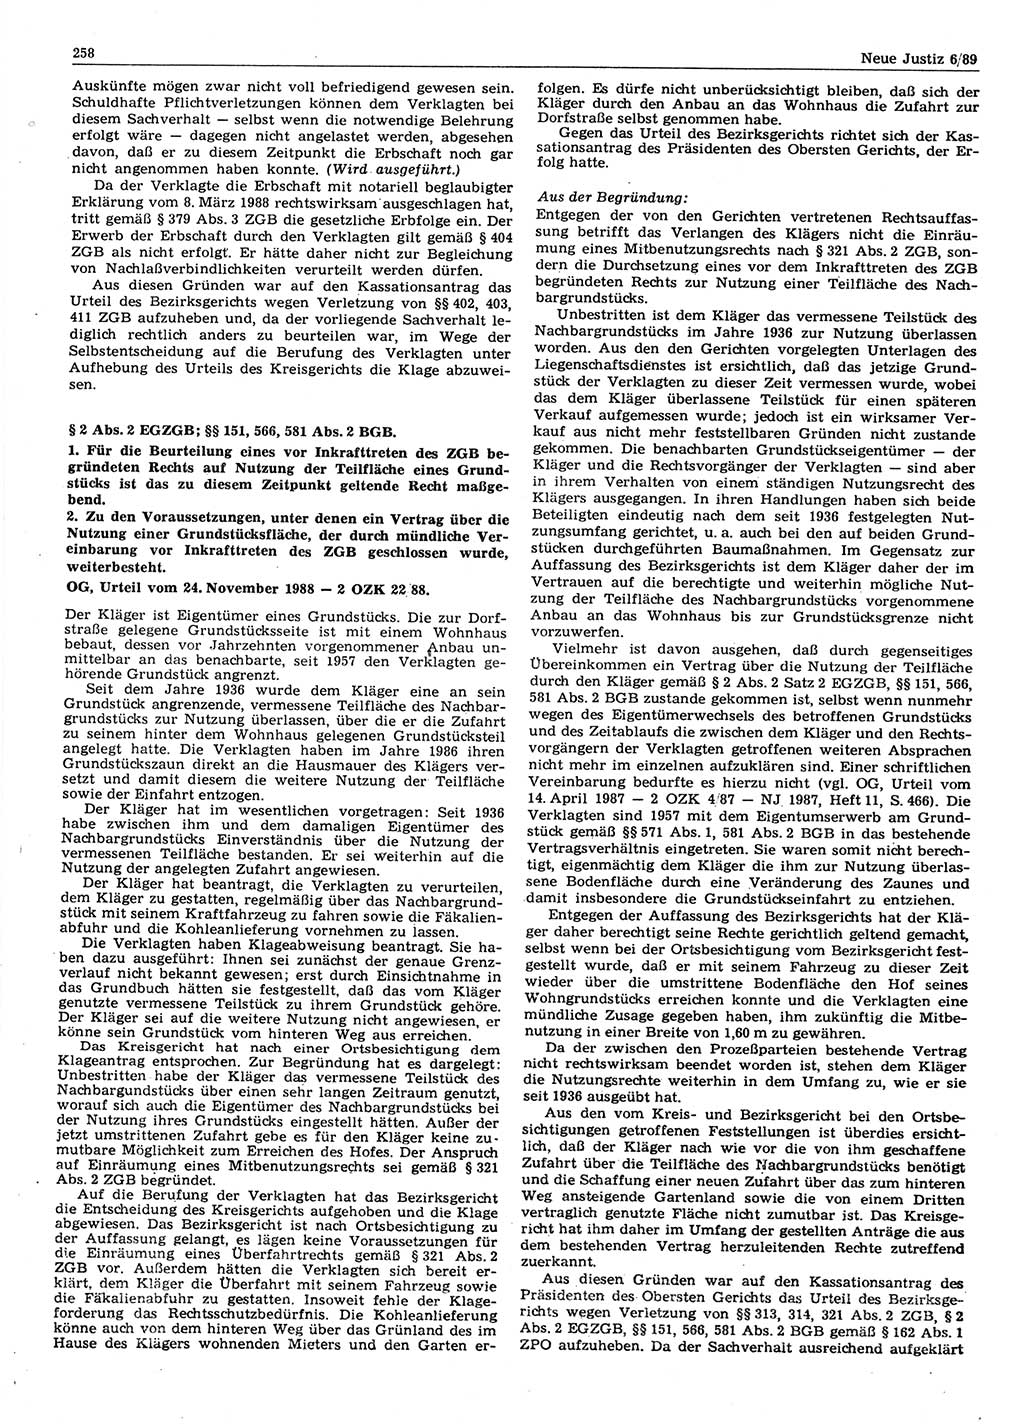 Neue Justiz (NJ), Zeitschrift für sozialistisches Recht und Gesetzlichkeit [Deutsche Demokratische Republik (DDR)], 43. Jahrgang 1989, Seite 258 (NJ DDR 1989, S. 258)